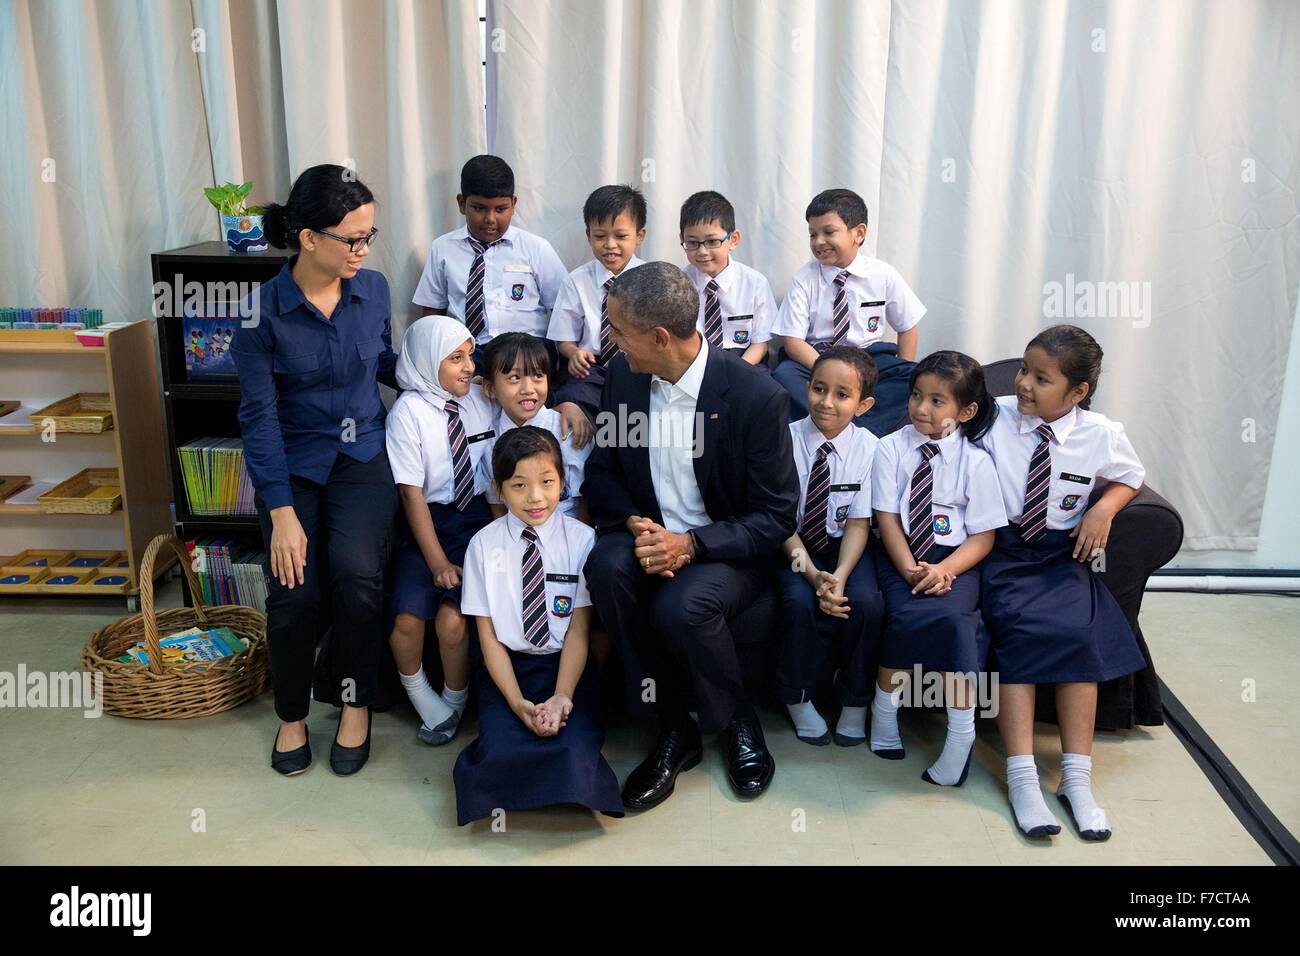 US-Präsident Barack Obama stellt für ein Gruppenfoto mit Flüchtlingskindern bei einem Rundgang durch die würde für Children Foundation 21. November 2015 in Kuala Lumpur, Malaysia. Das Zentrum unterstützt Arme Familien und Flüchtlingen, darunter die von Myanmar und Syrien. Stockfoto